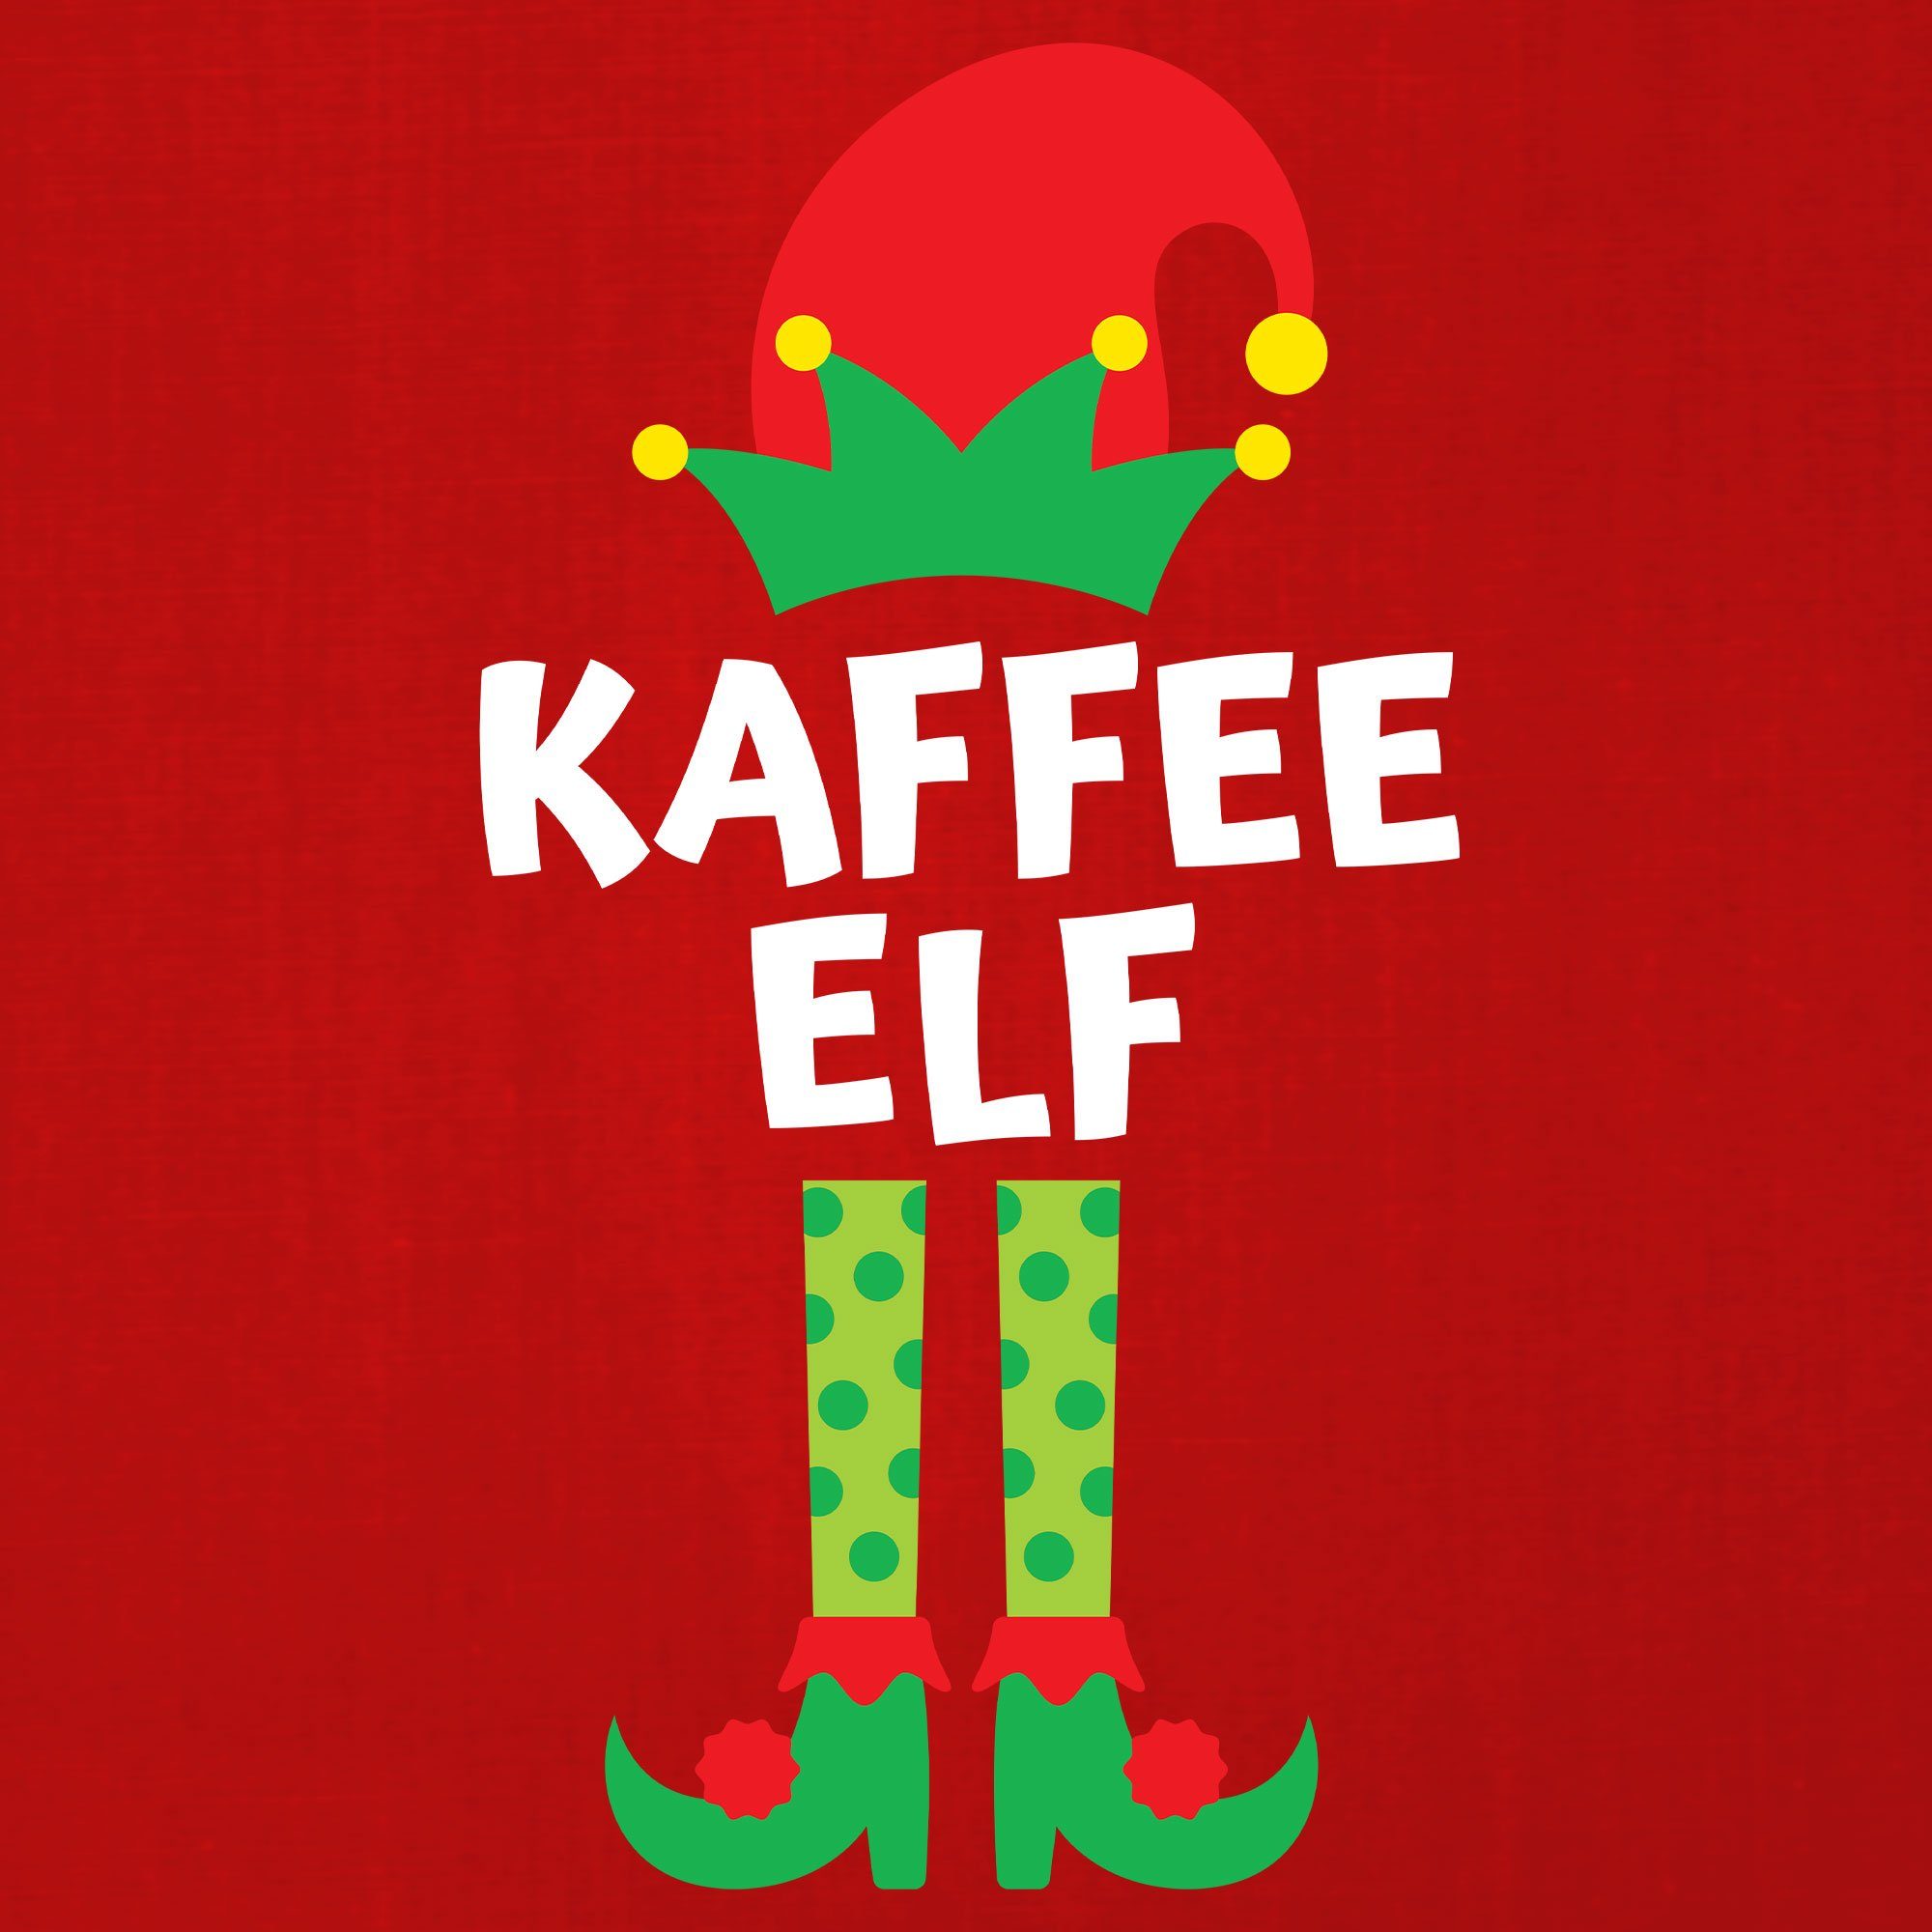 (1-tlg) Formatee - Christmas X-mas Kurzarmshirt Rot Elf Kaffee Herren Quattro T-Shirt Weihnachten